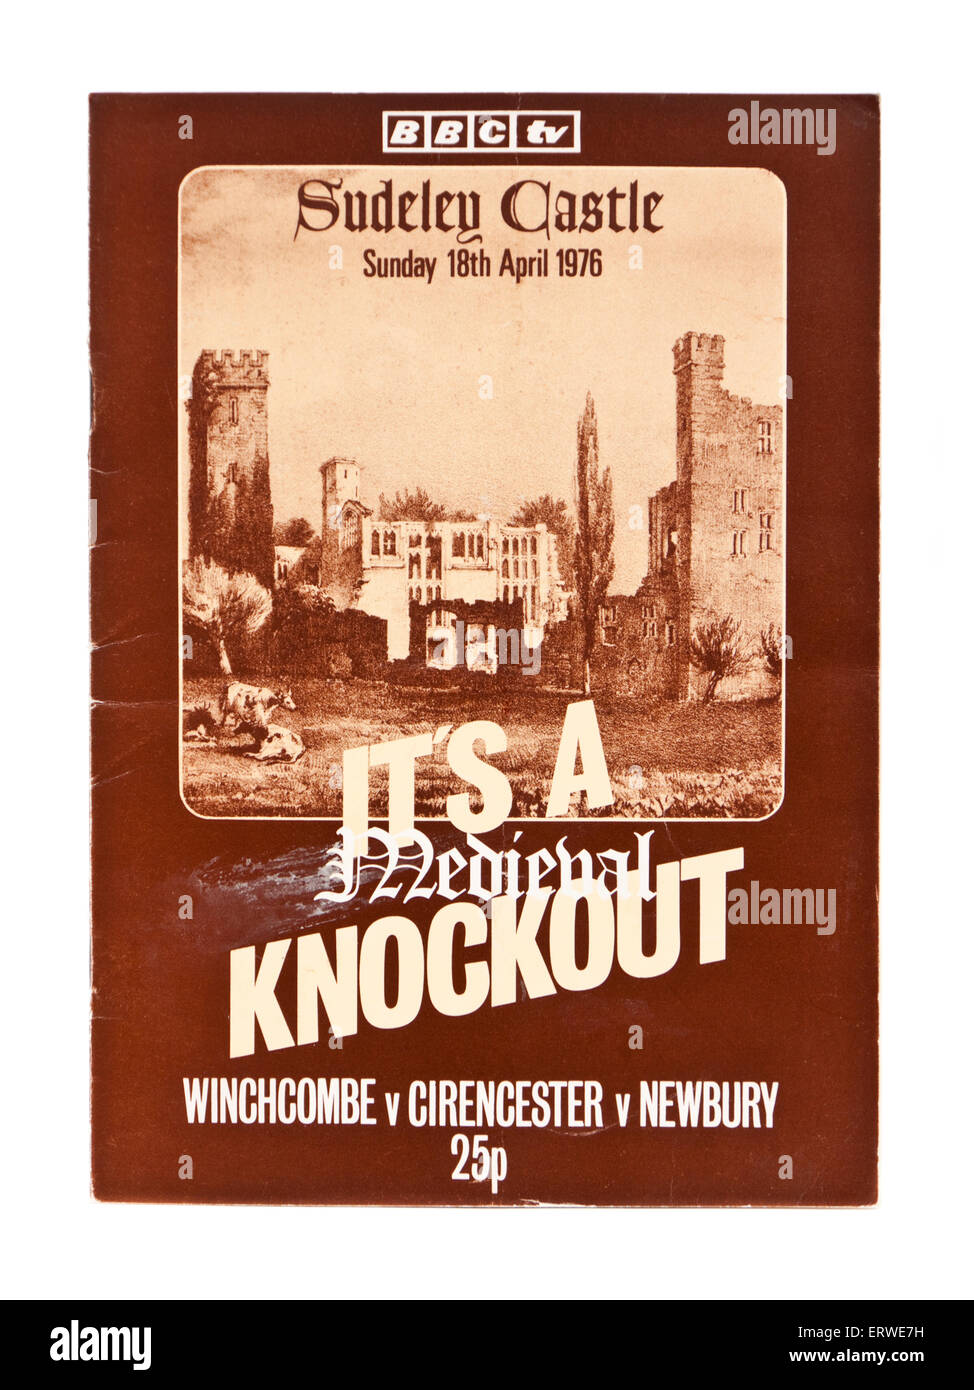 Programme TV de la BBC pour 'It's A Knockout' médiévale au château de Sudeley le dimanche 18 avril 1976 Banque D'Images